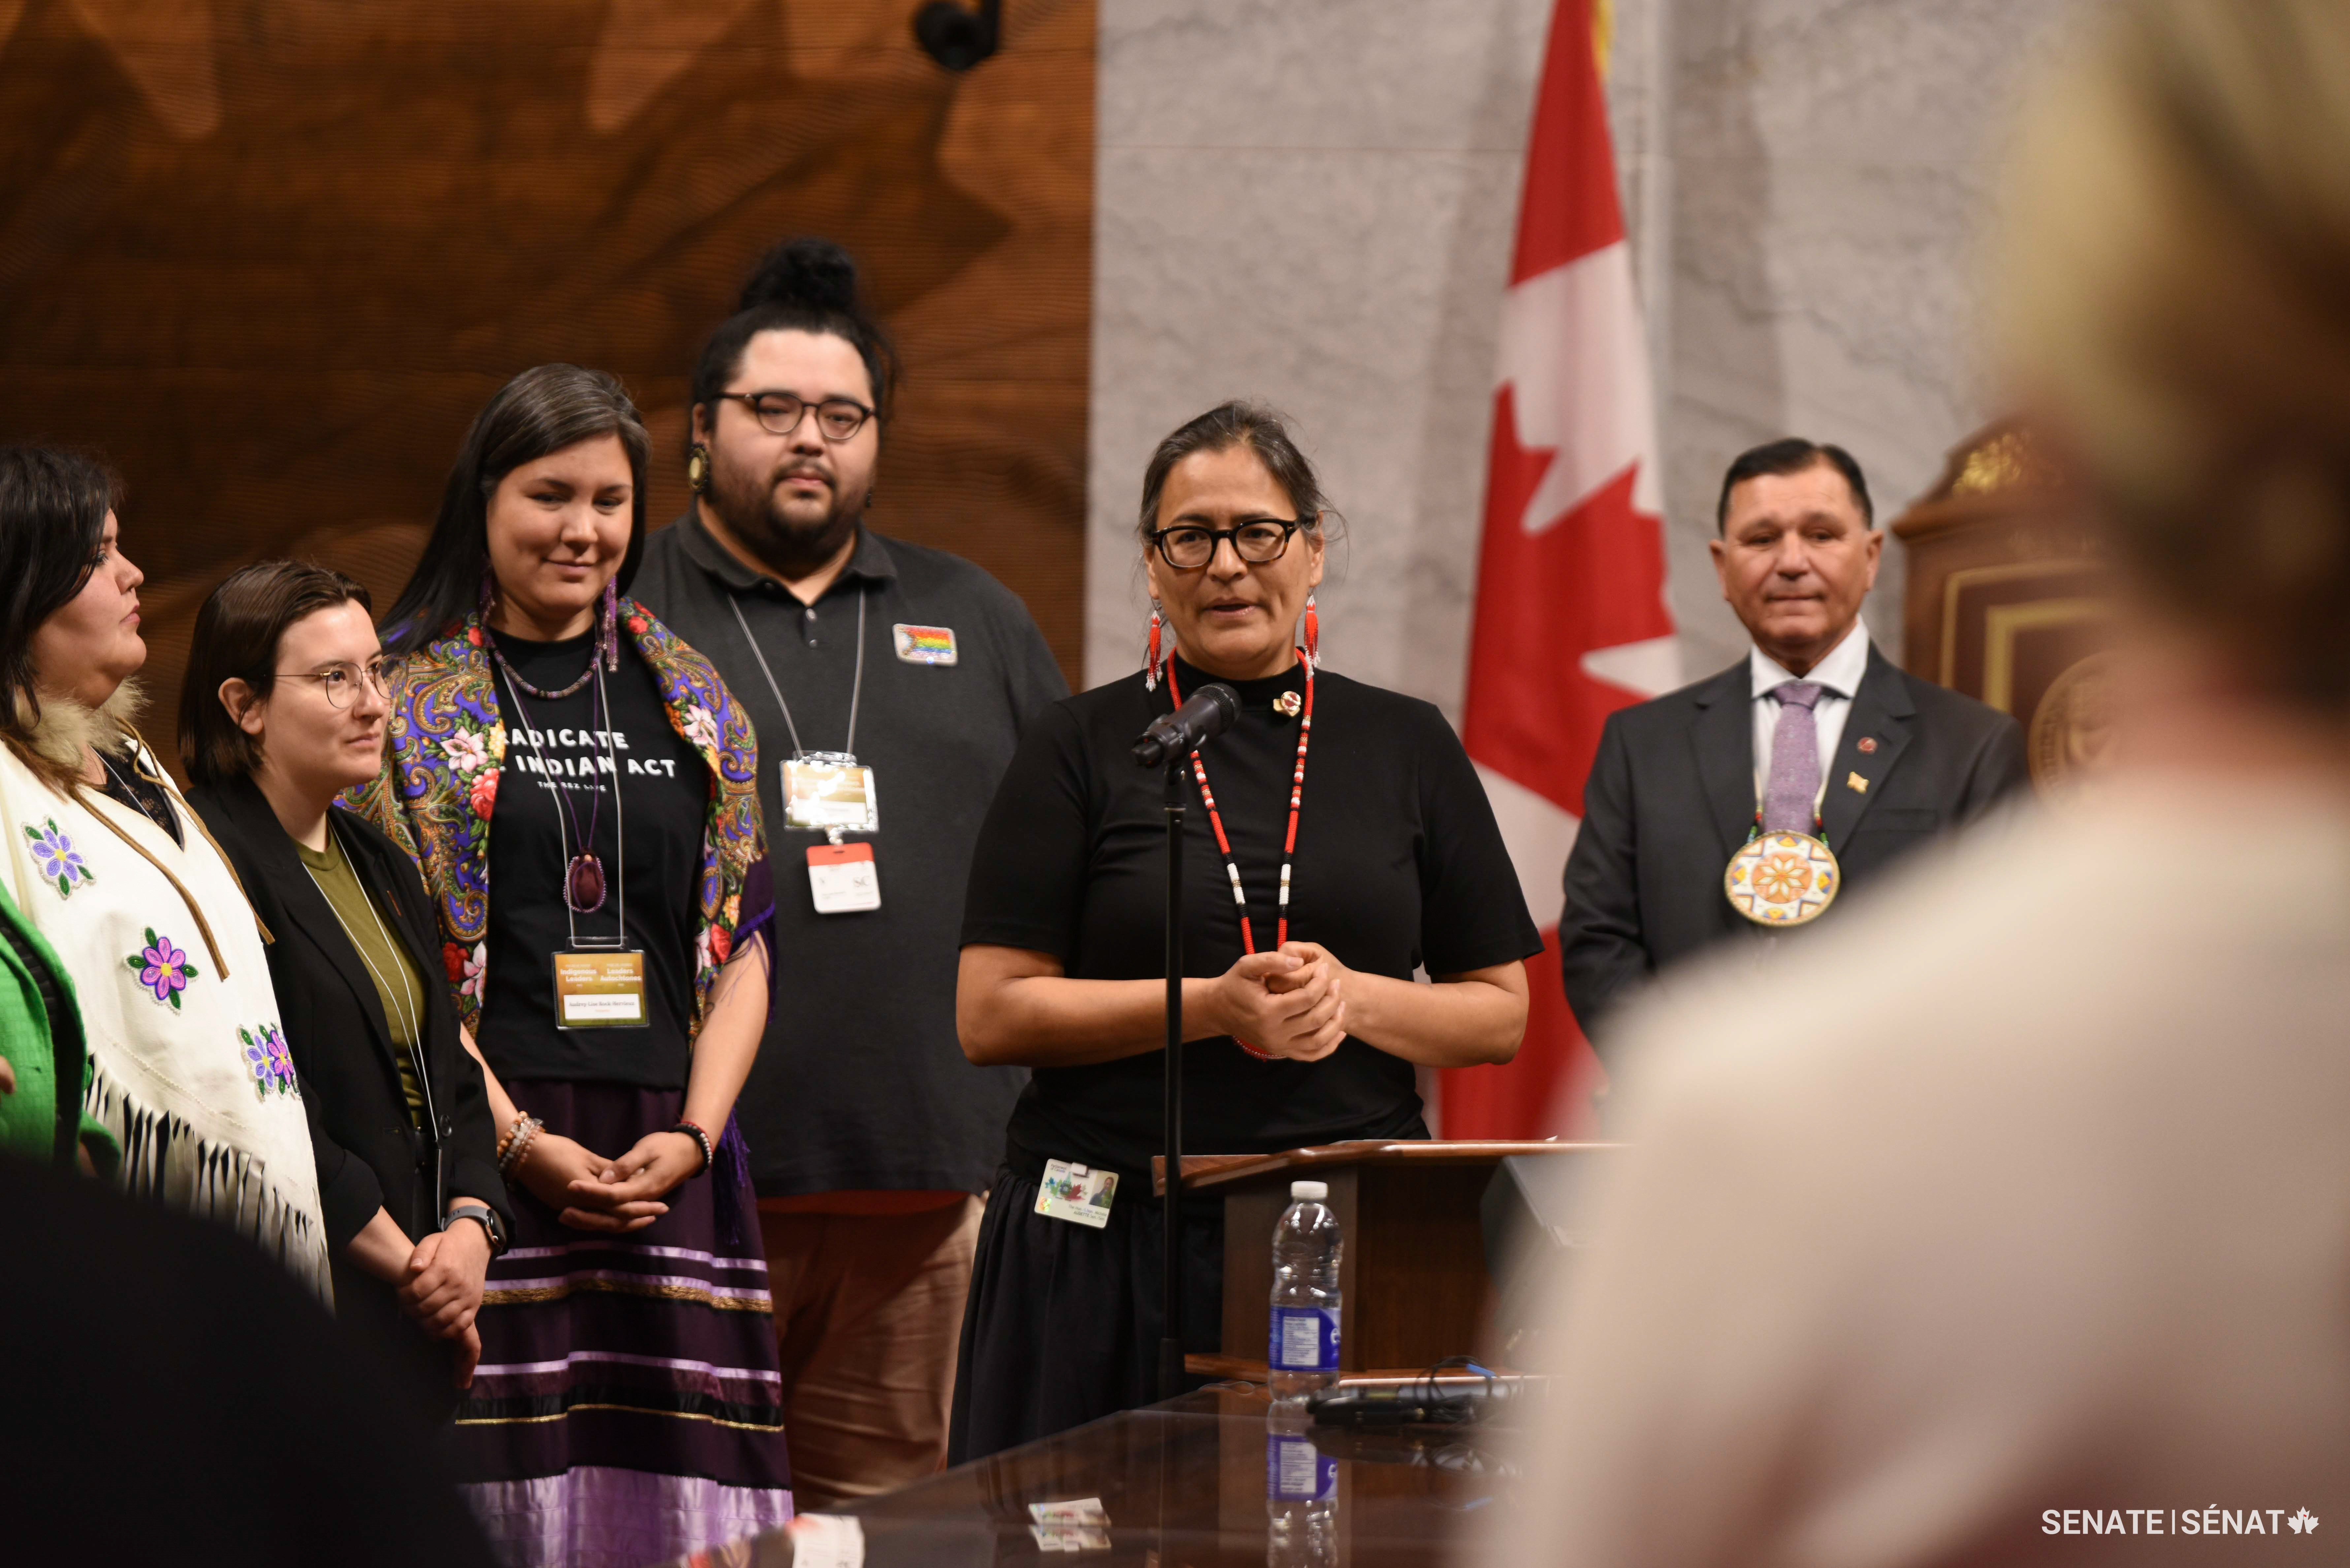 La sénatrice Michèle Audette accueille les jeunes leaders autochtones au Sénat lors de la cérémonie d’ouverture dans la Chambre rouge. 